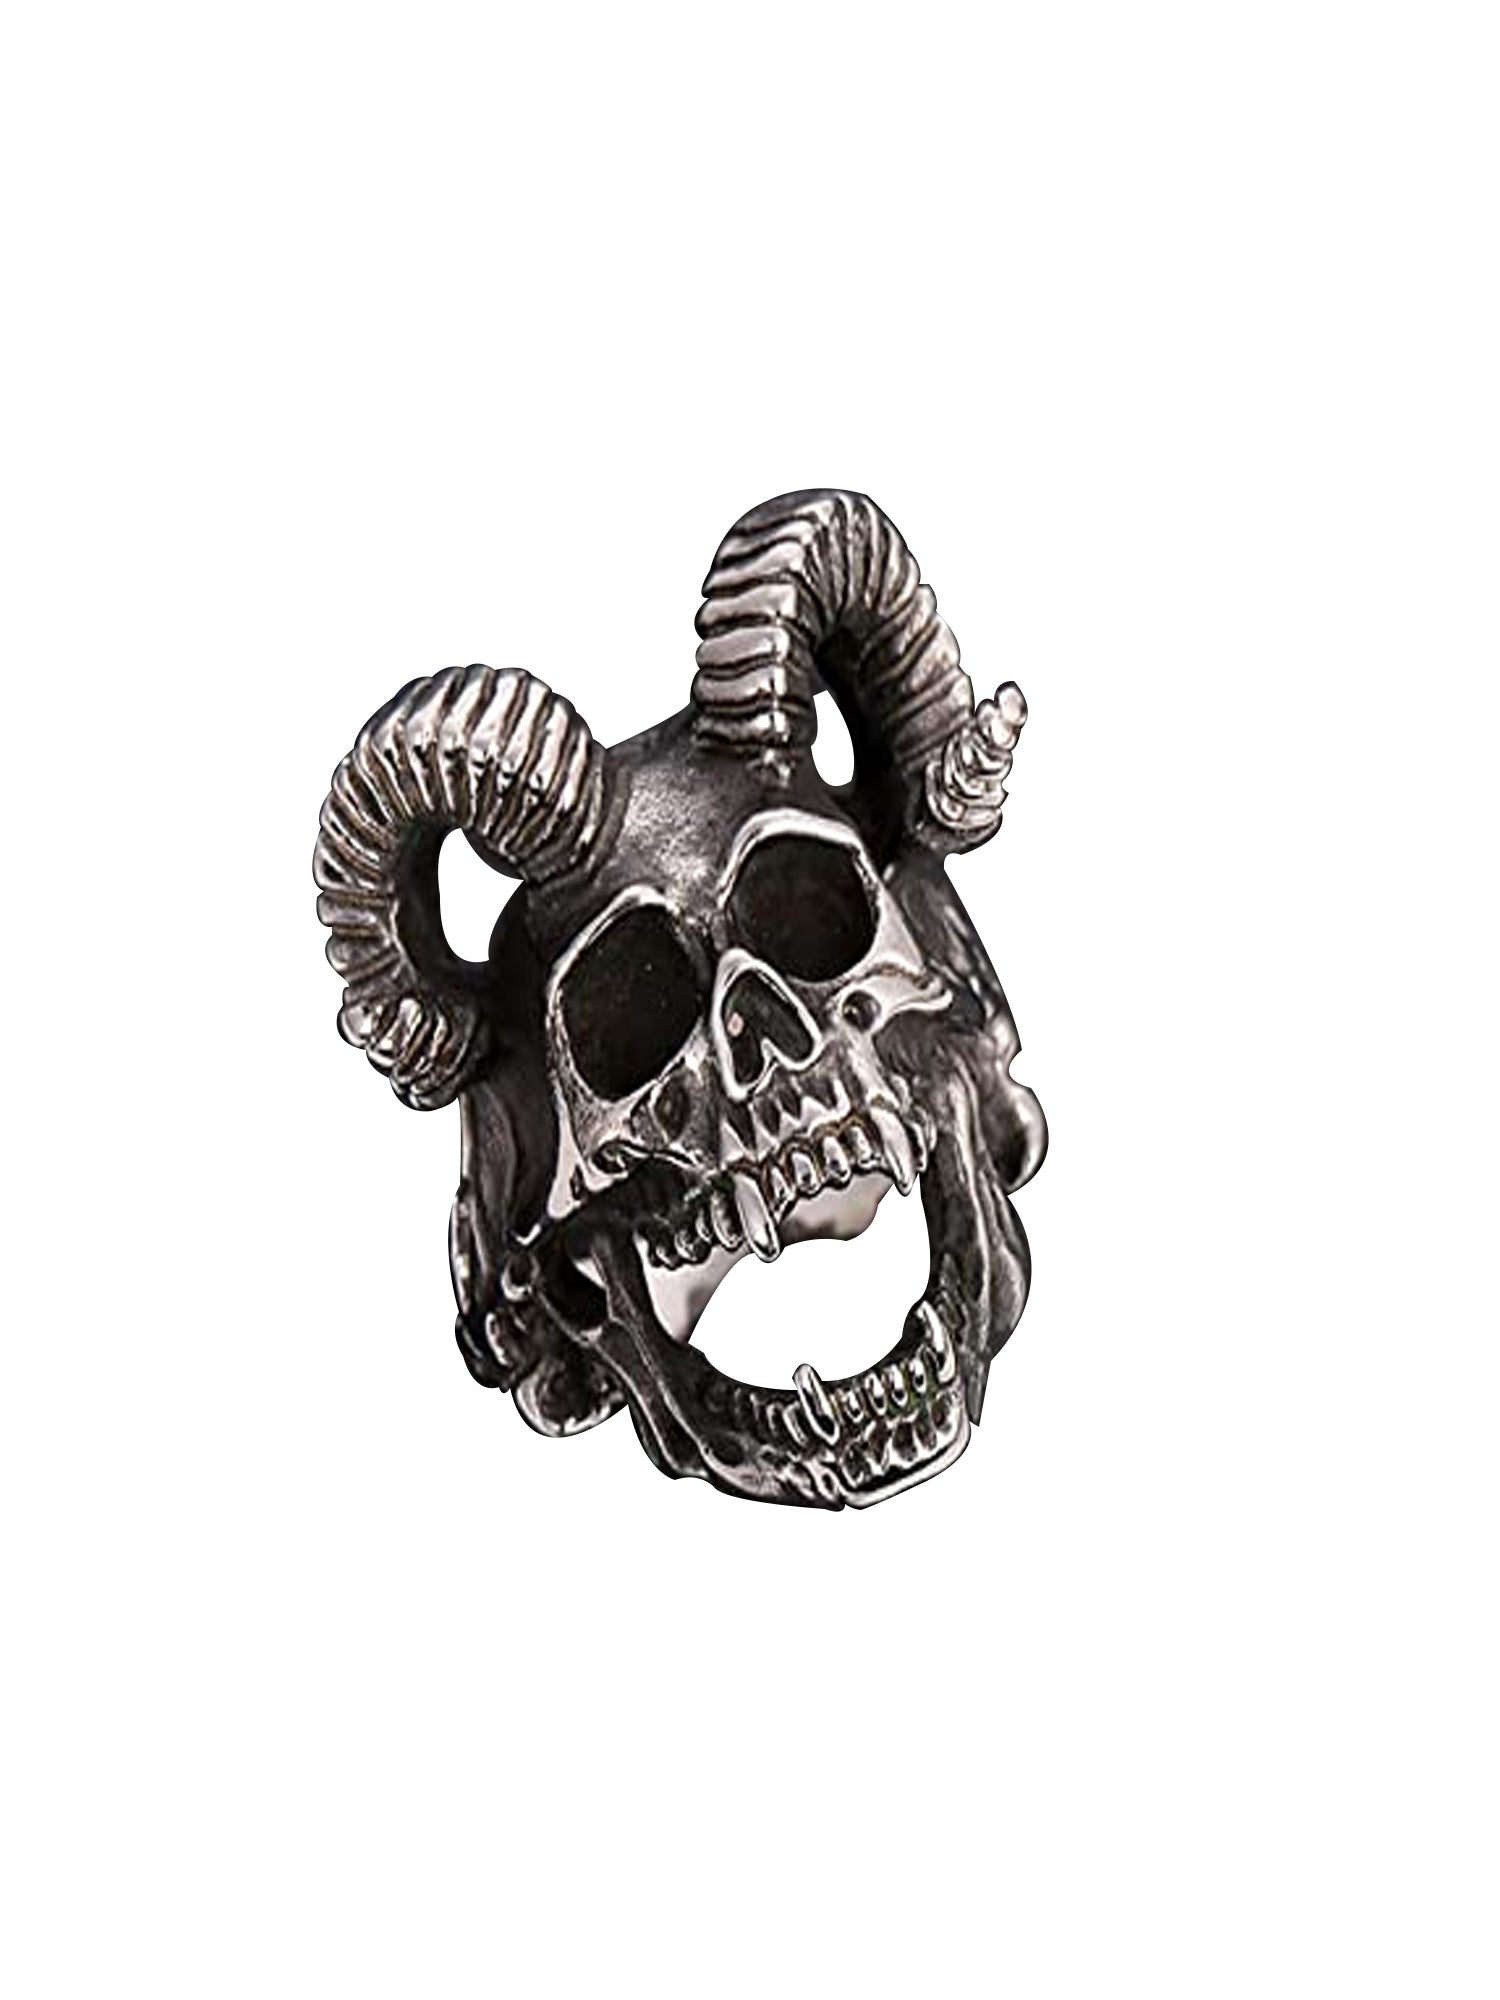 Full Ram Horns Devil Skull Ring With Sharp Teeth Stainless Steel - US Size 11